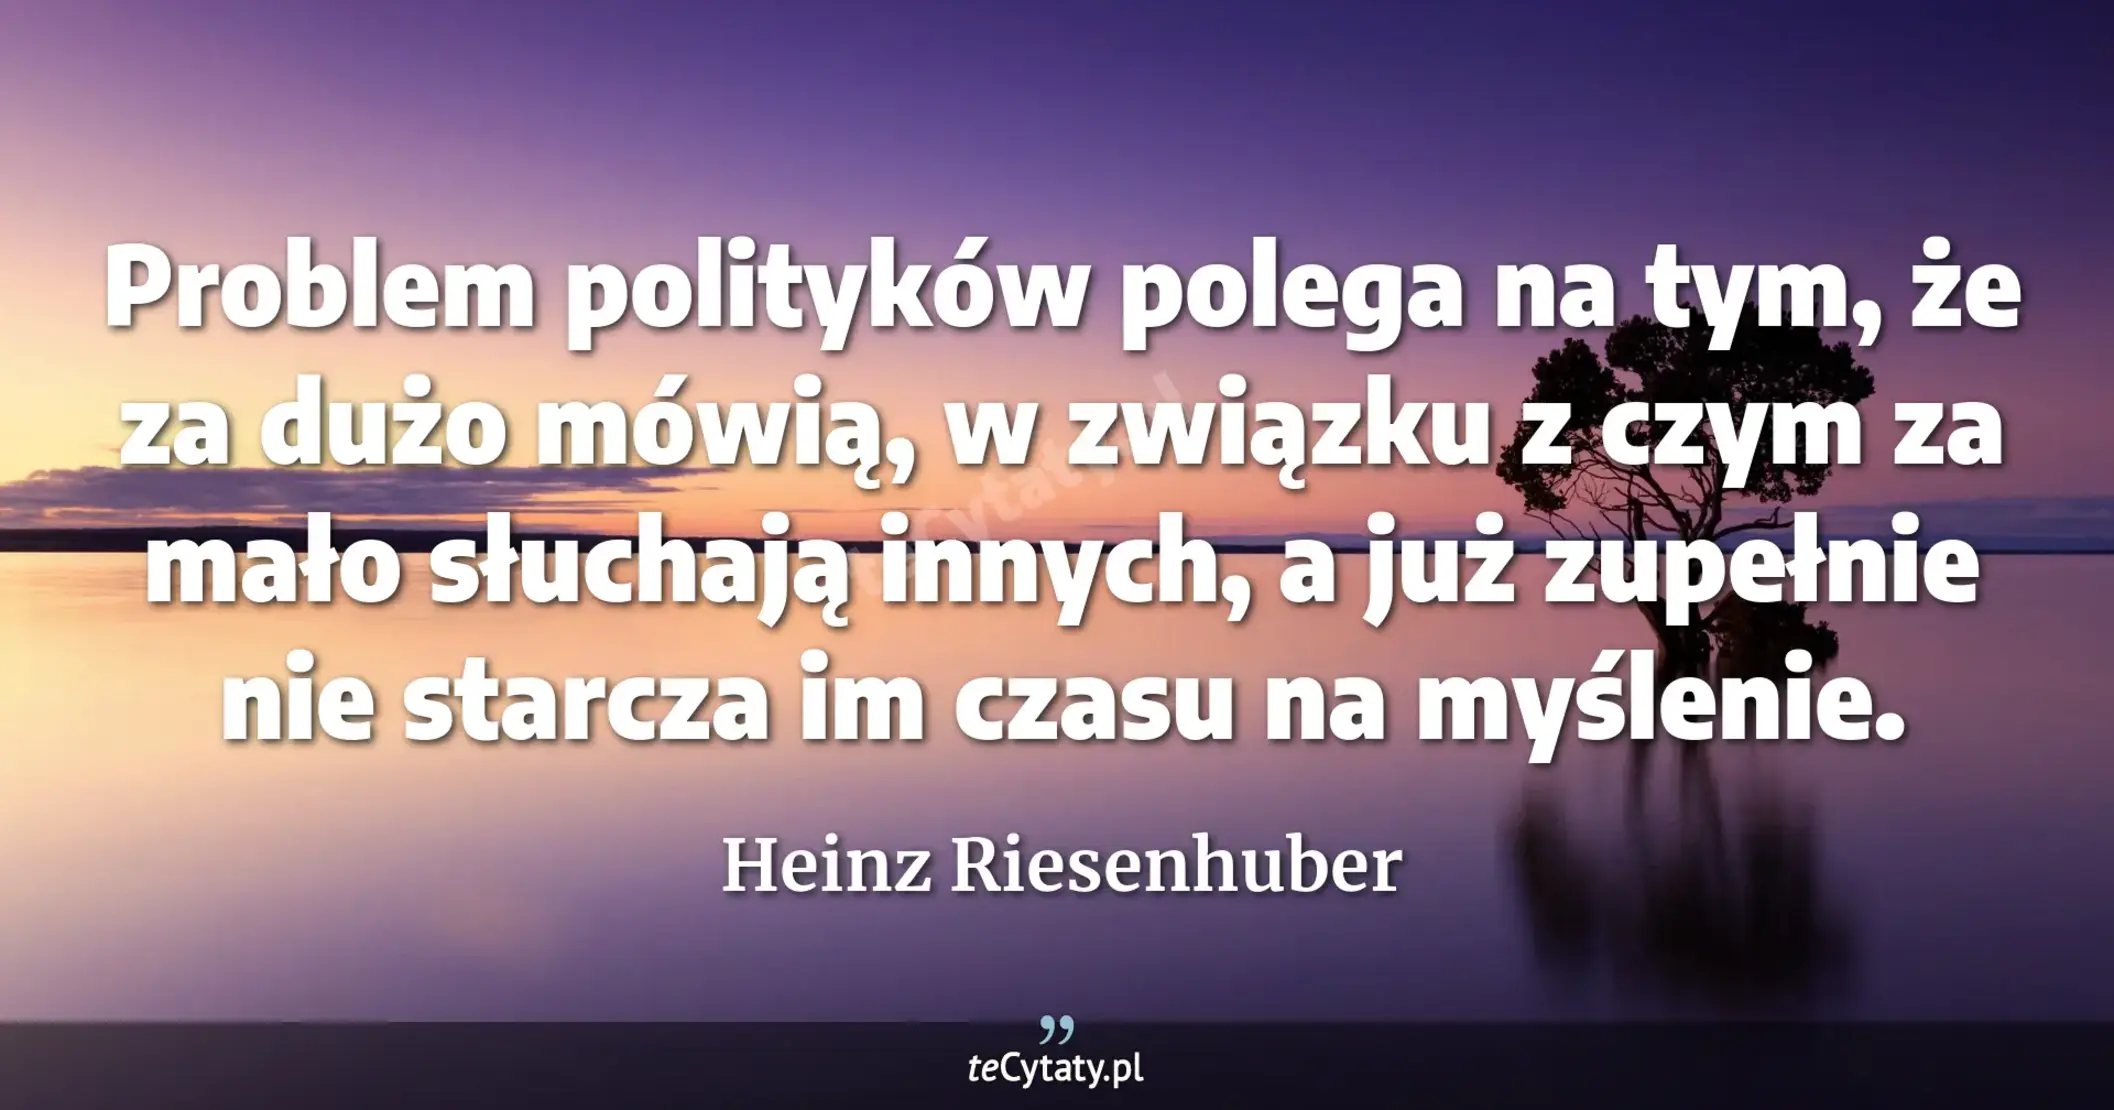 Problem polityków polega na tym, że za dużo mówią, w związku z czym za mało słuchają innych, a już zupełnie nie starcza im czasu na myślenie. - Heinz Riesenhuber